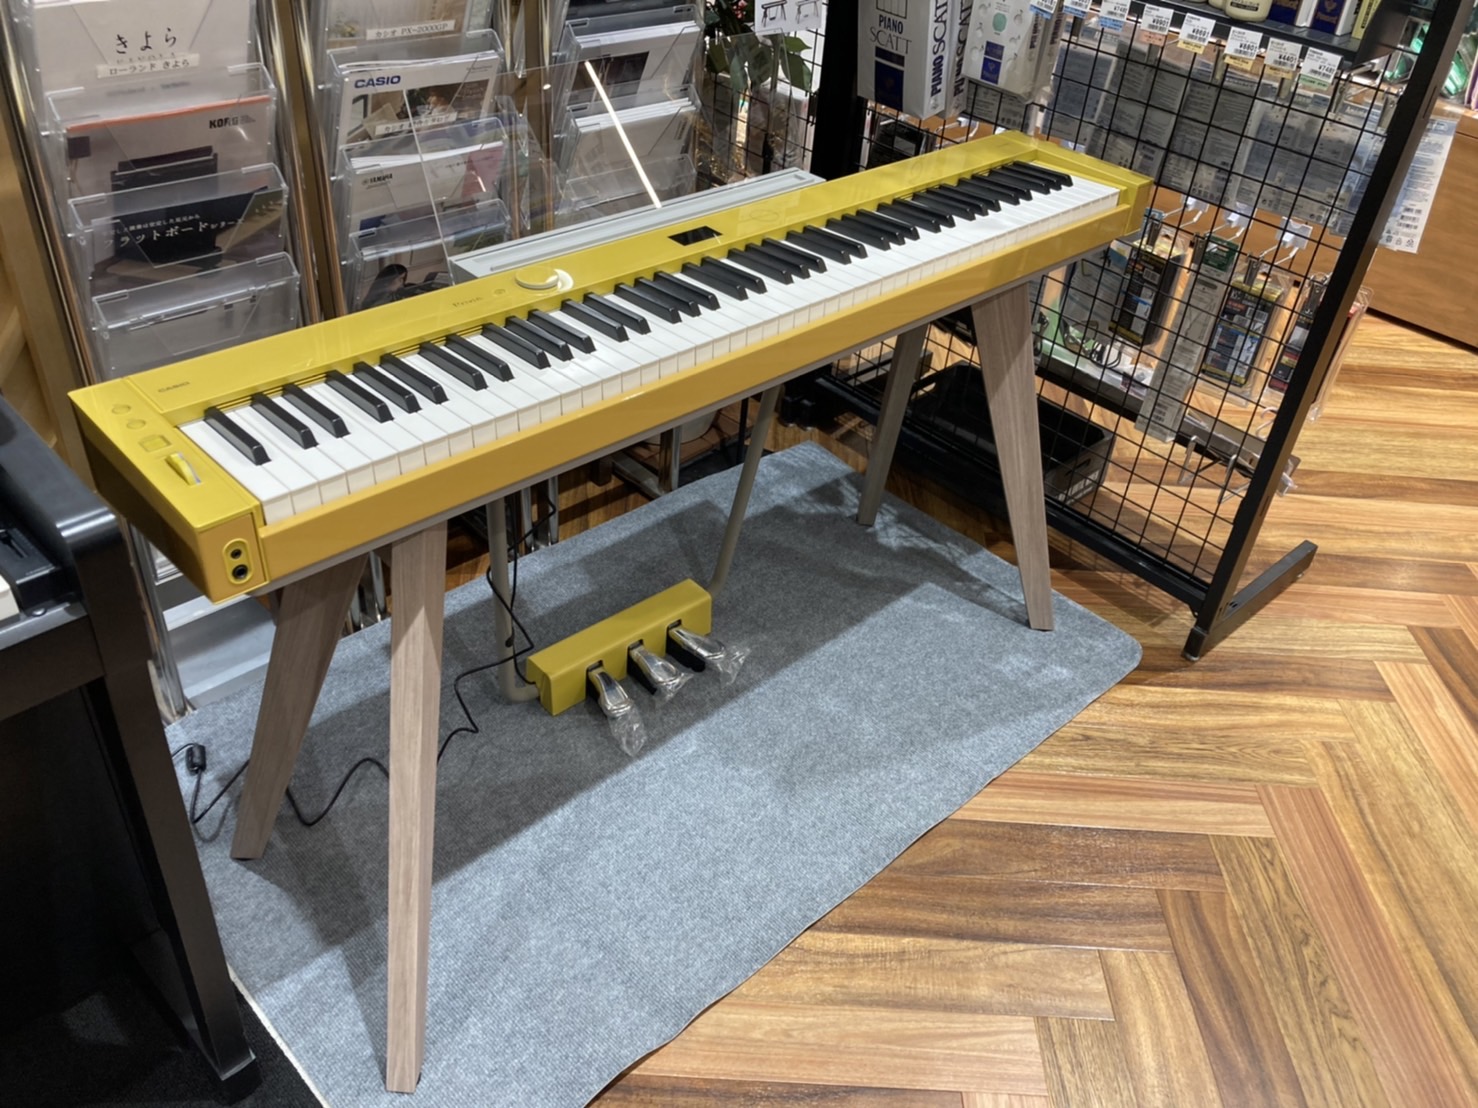 CASIOから新しい電子ピアノが新発売！どこから見ても美しく、どんな空間にも調和する、新しいデザインです♪ Privia PX-S7000 特徴”ピアノがある生活”の当たり前をくつがえす、数々の技術とこだわりの結晶がPrivia PX-S7000です。スタンド・ペダル一体型というピアノとしての様式美 […]